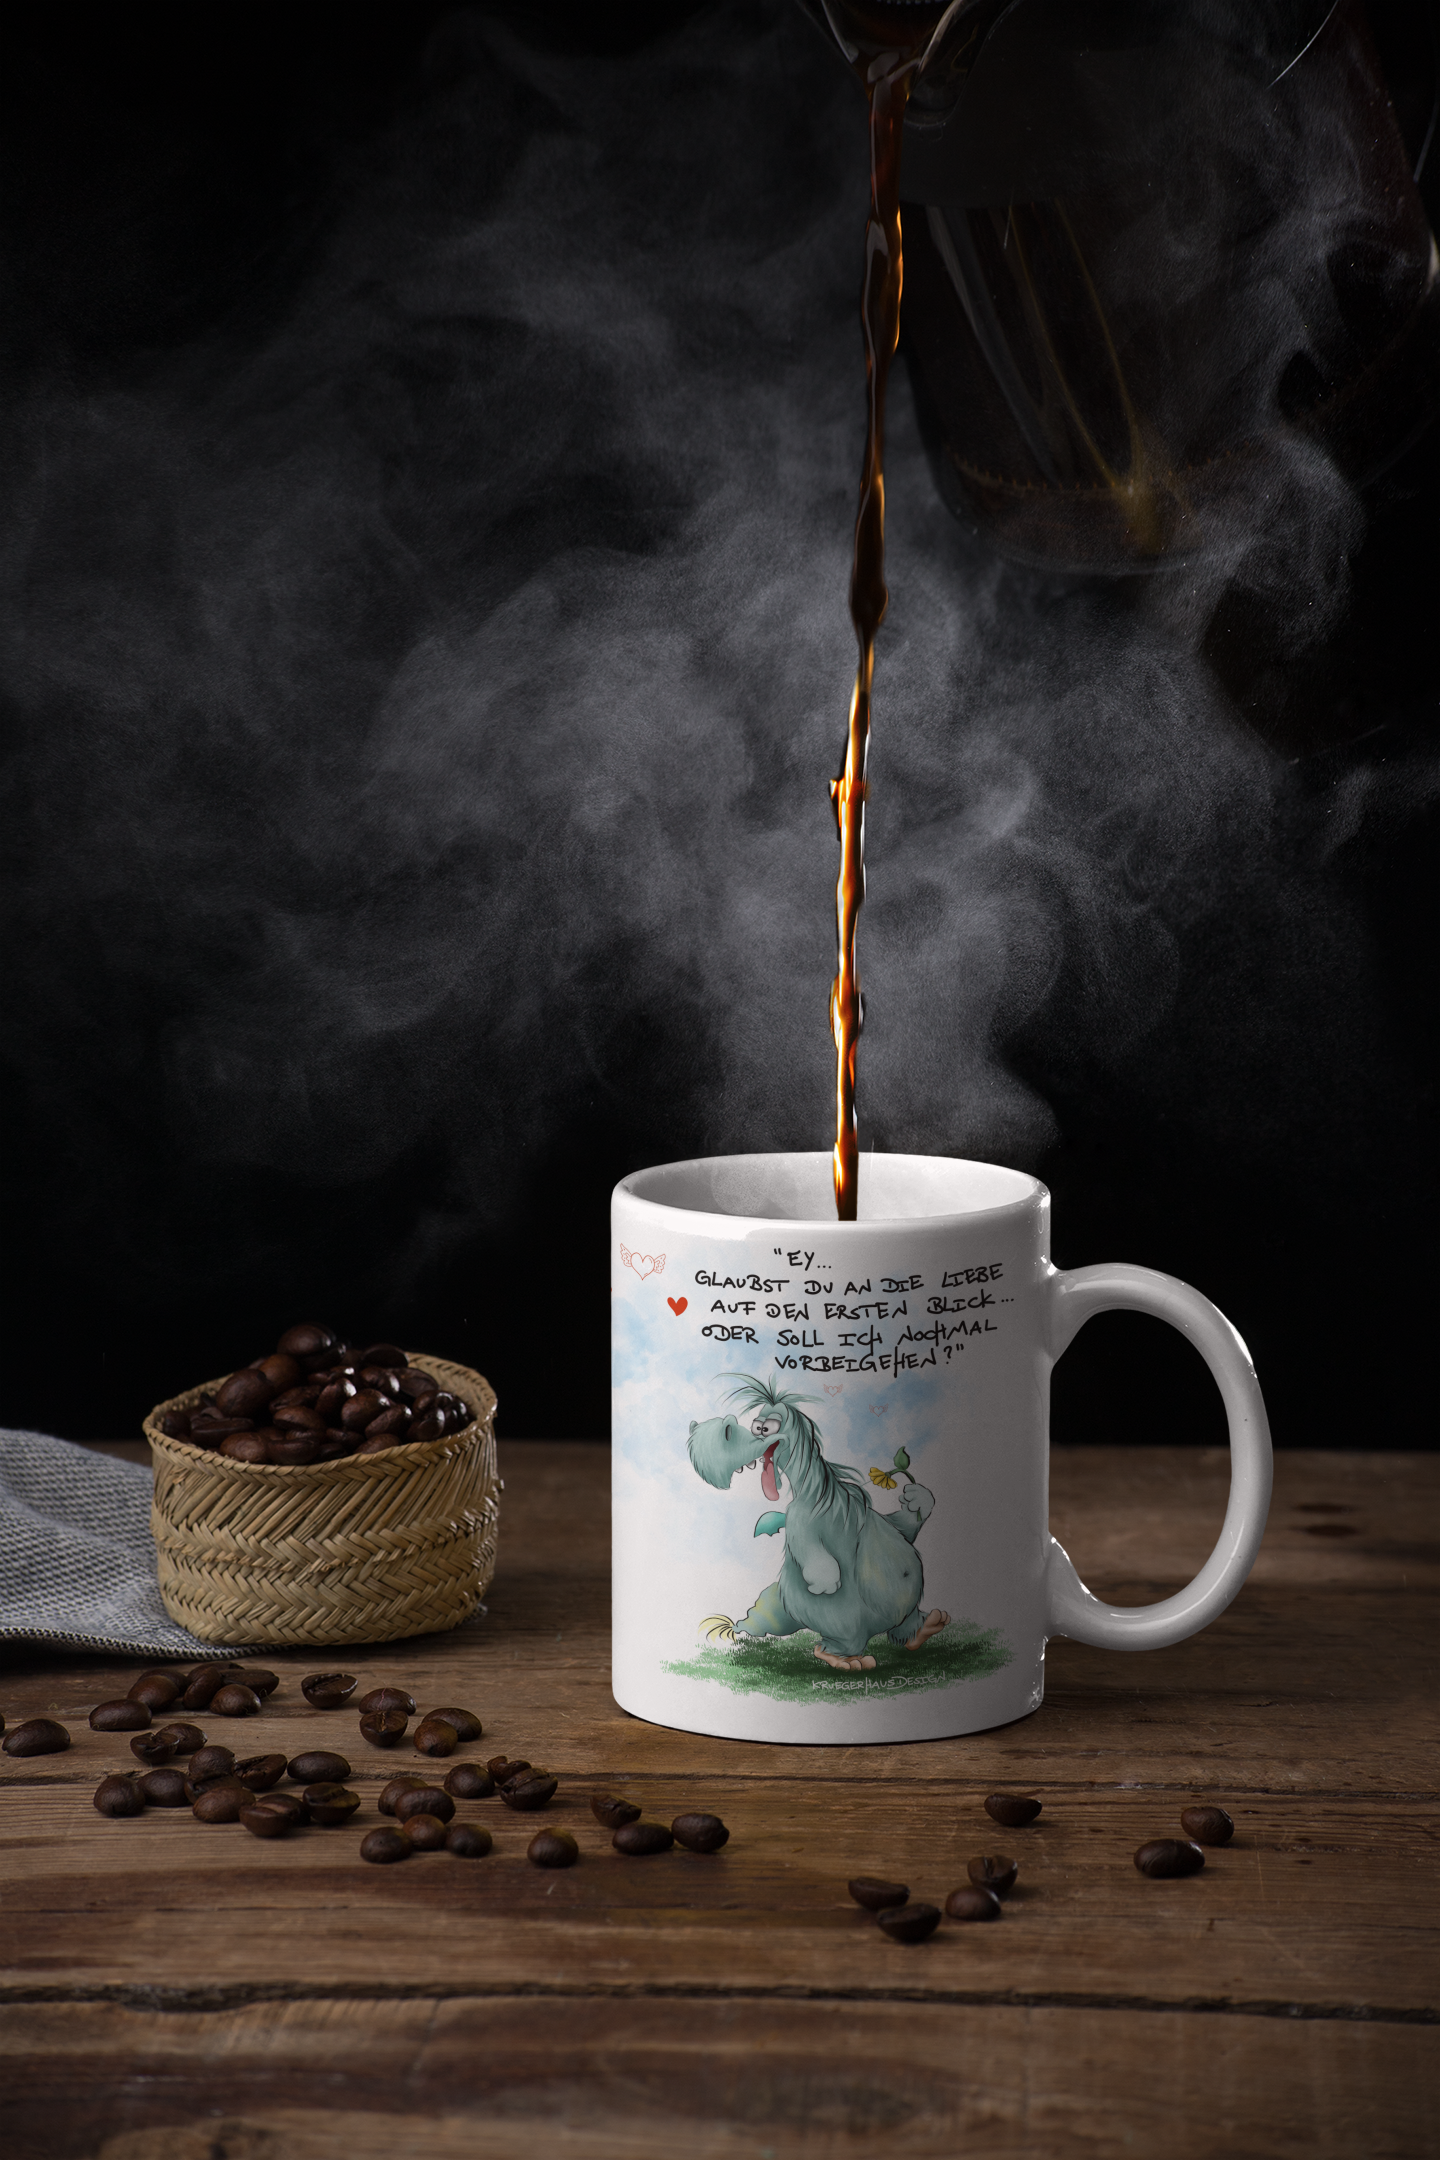 Tasse, Kaffeetasse Kruegerhausdesign Monster und Spruch "Ey, glaubst du an..." Volldruck